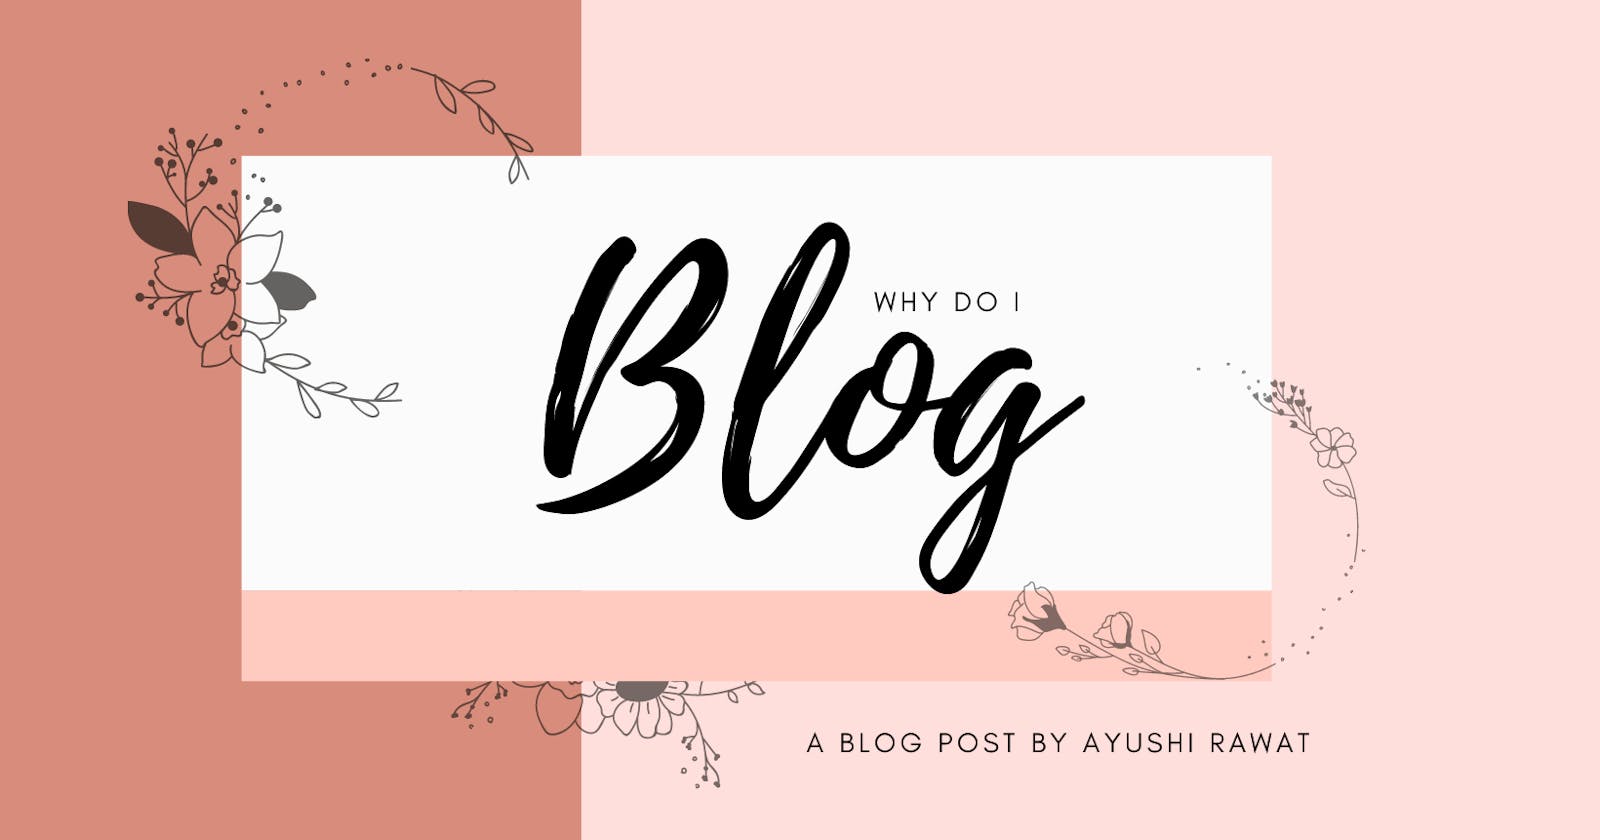 Why Do I Blog?